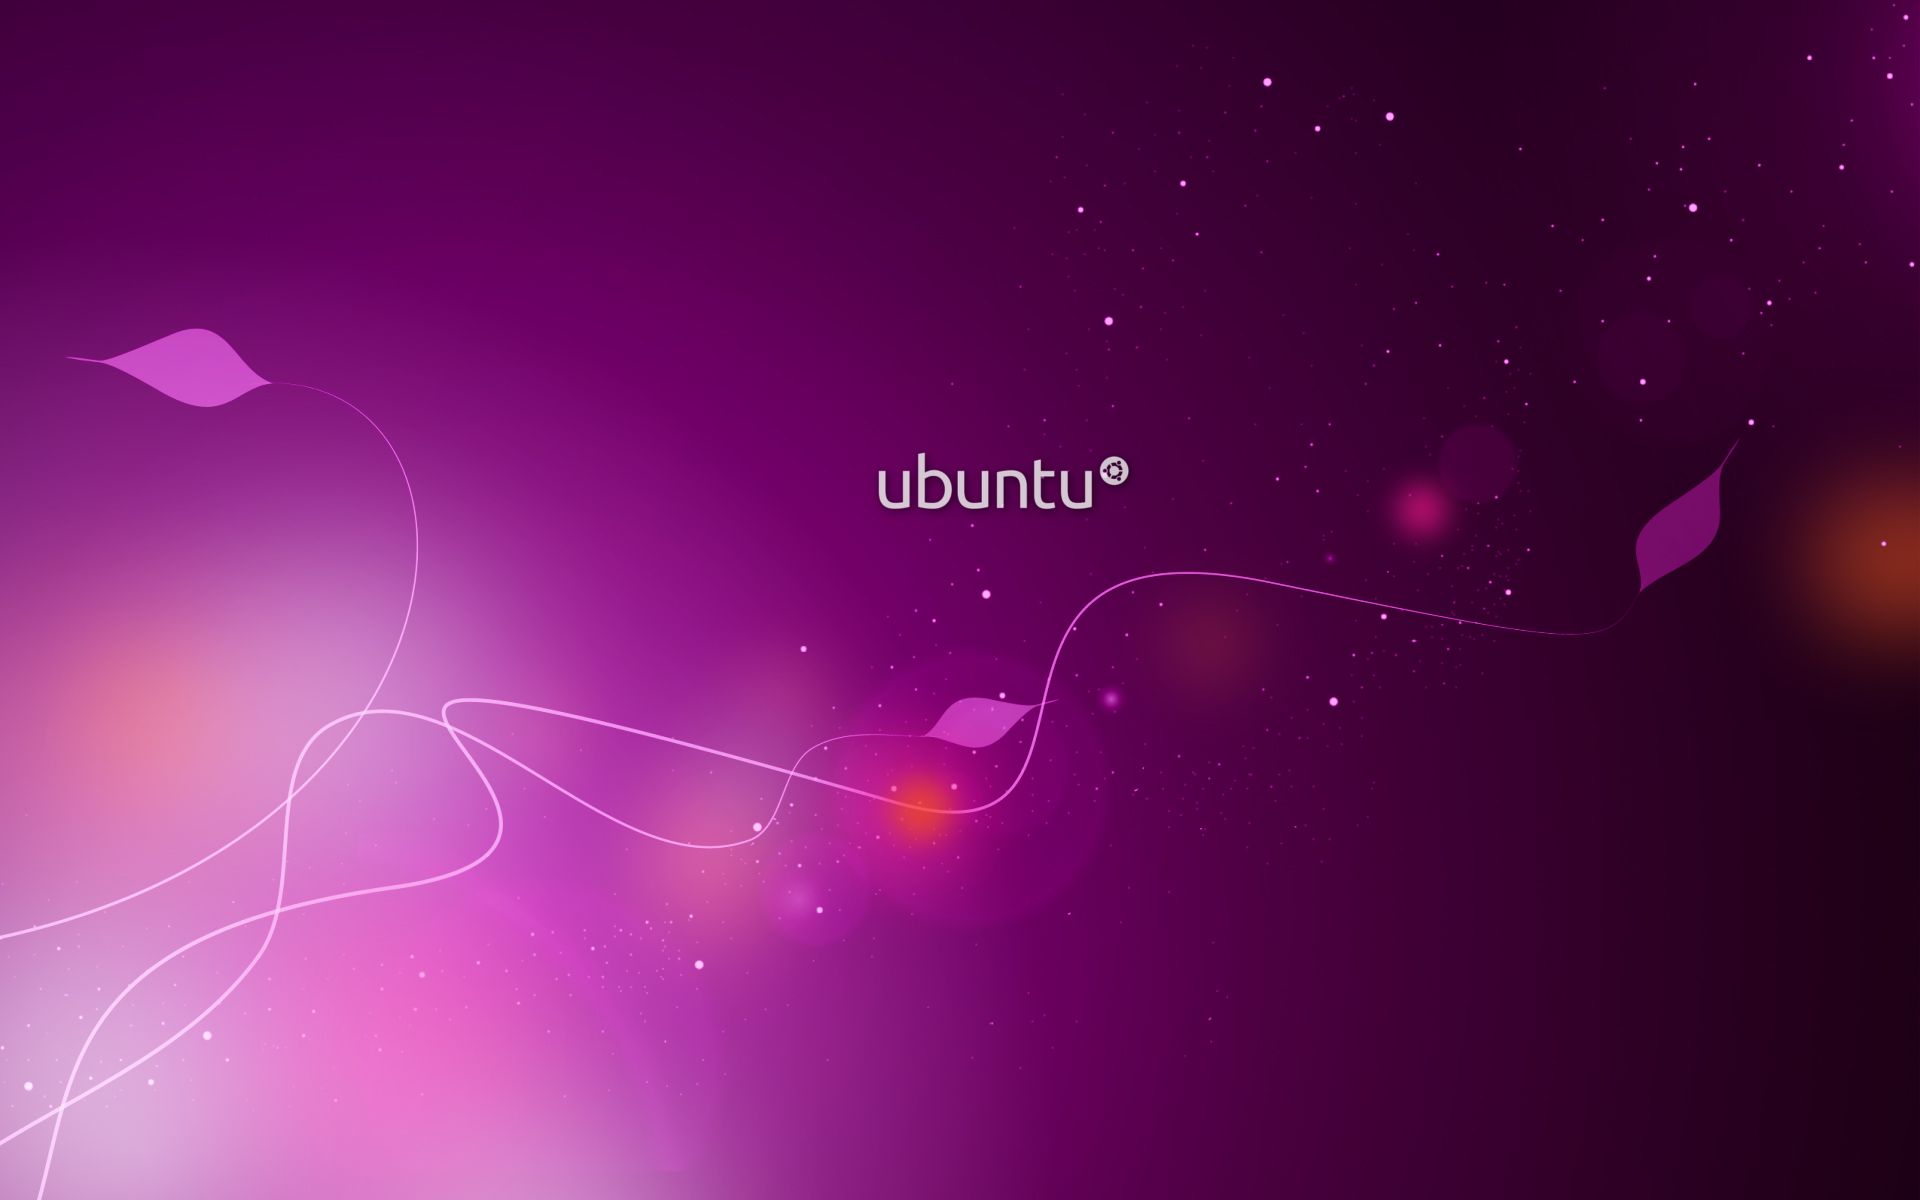 wonderful ubuntu image pc